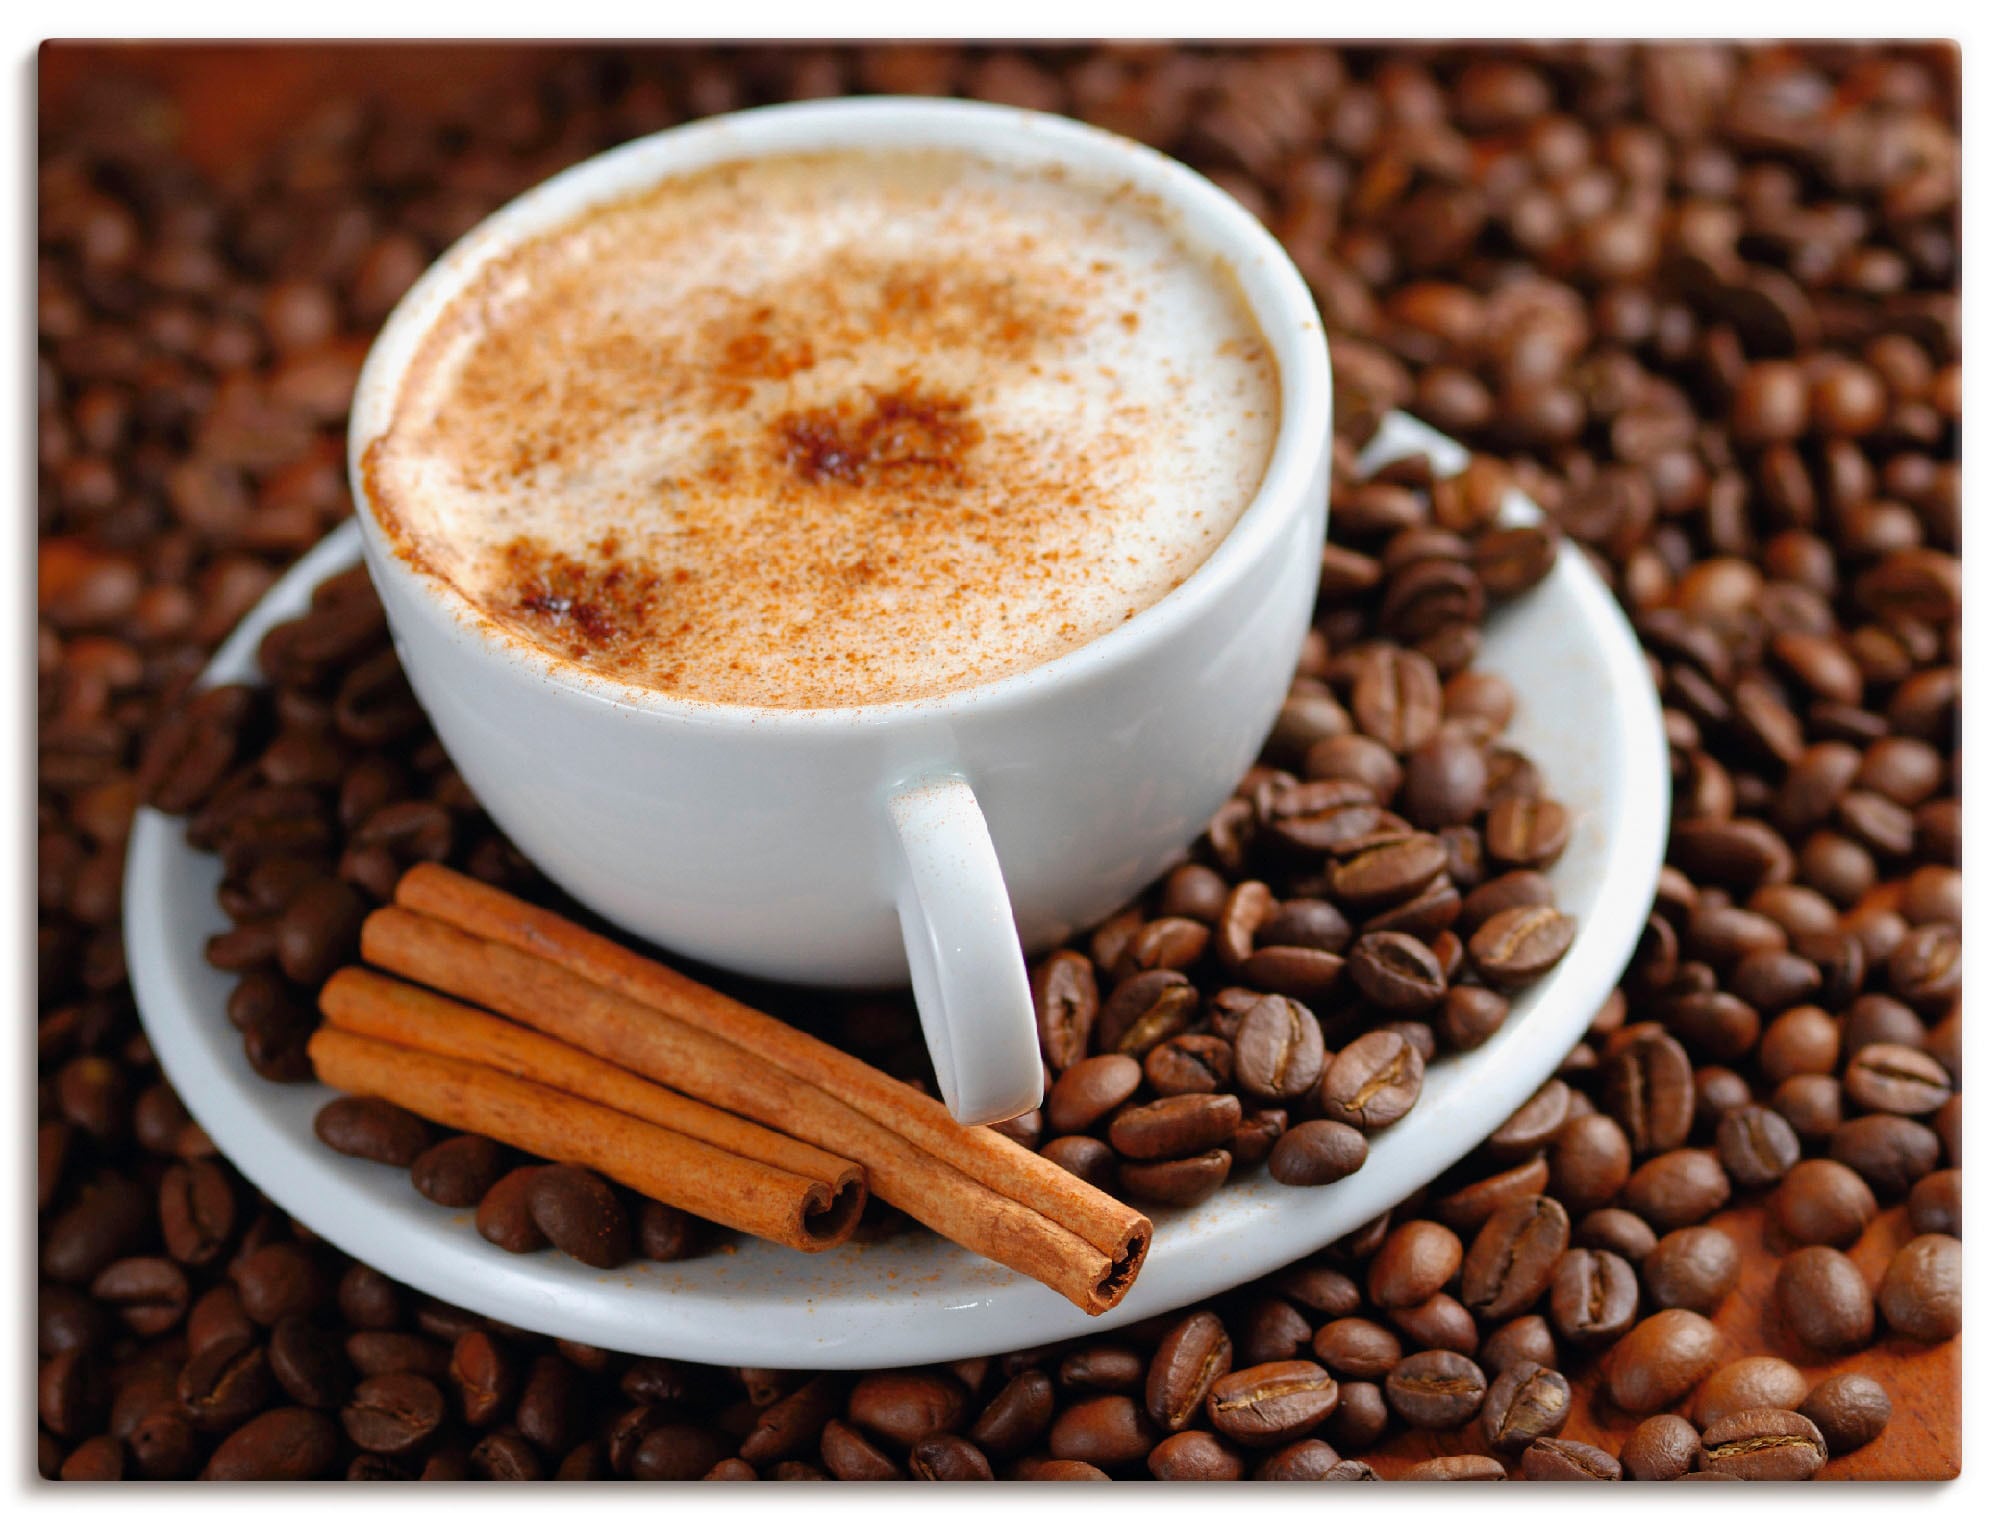 Artland Wandbild »Cappuccino - Kaffee«, Getränke, (1 St.), als Alubild, Outdoorbild, Leinwandbild, Wandaufkleber, versch. Größen